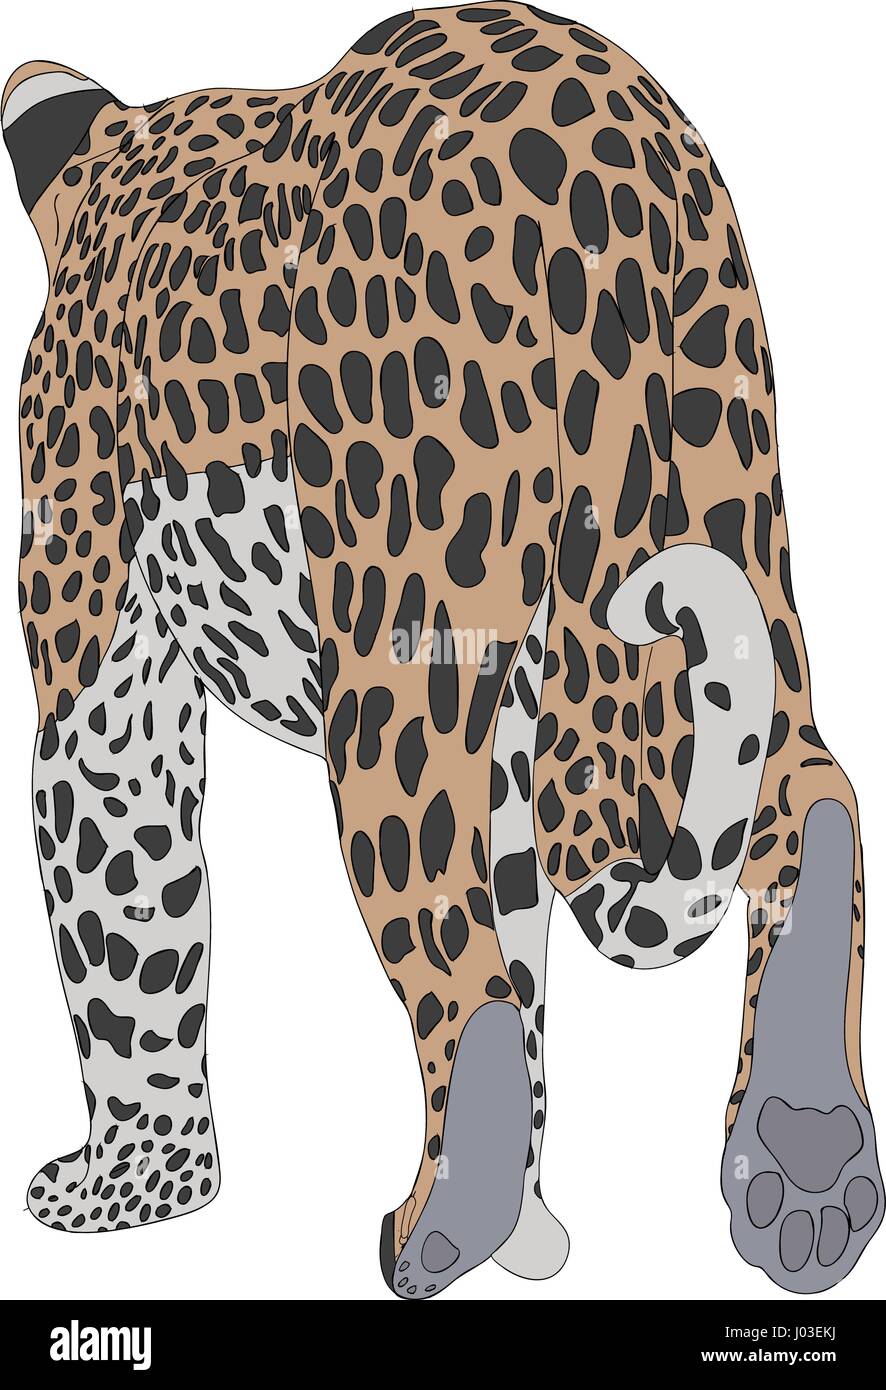 Disegnata a mano ritratto di un ghepardo selvatico Illustrazione Vettoriale